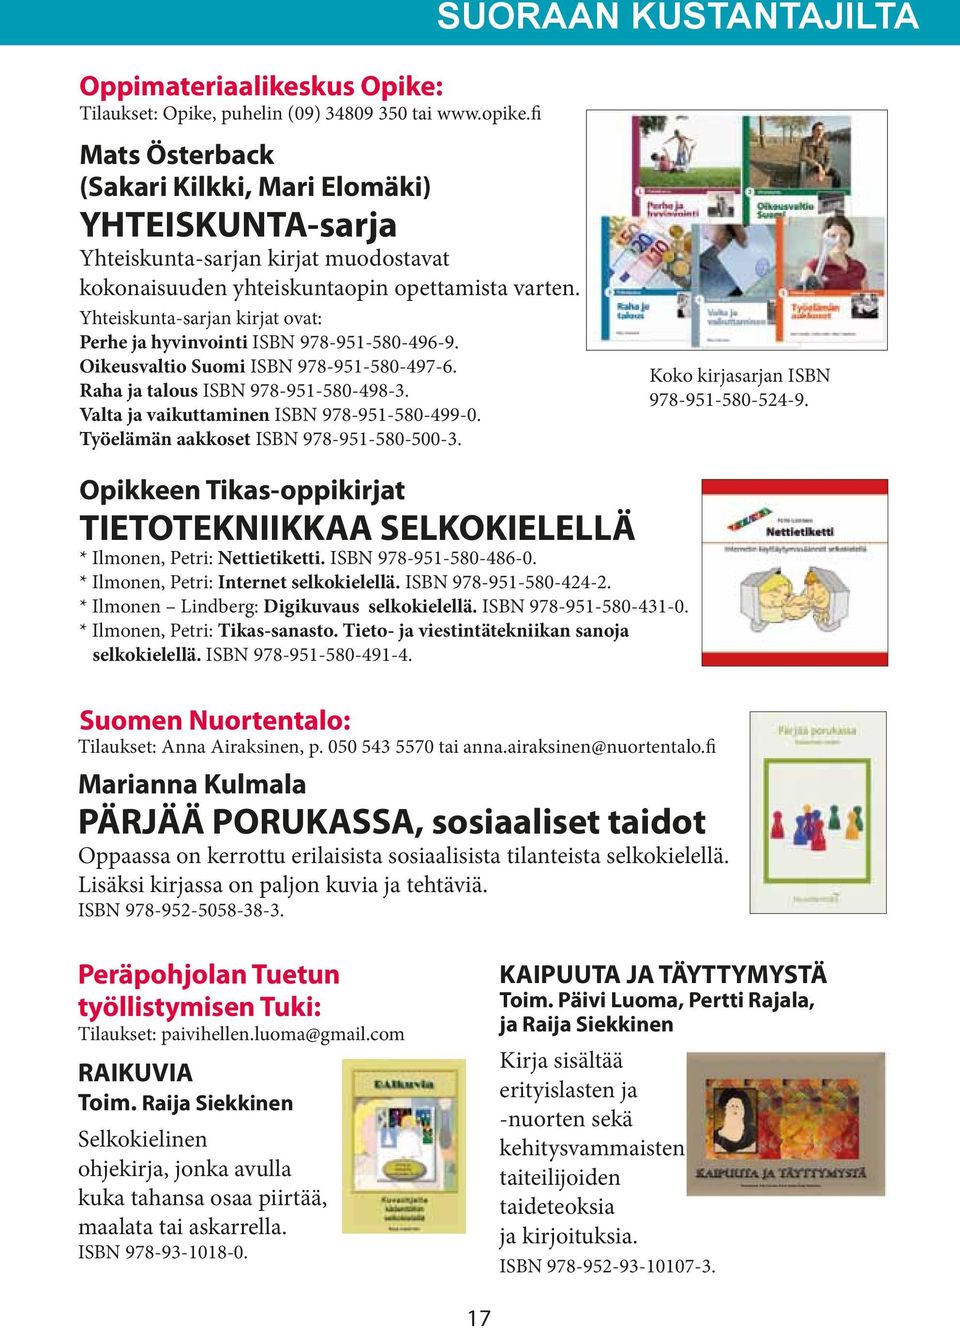 Yhteiskunta-sarjan kirjat ovat: Perhe ja hyvinvointi ISBN 978-951-580-496-9. Oikeusvaltio Suomi ISBN 978-951-580-497-6. Raha ja talous ISBN 978-951-580-498-3.